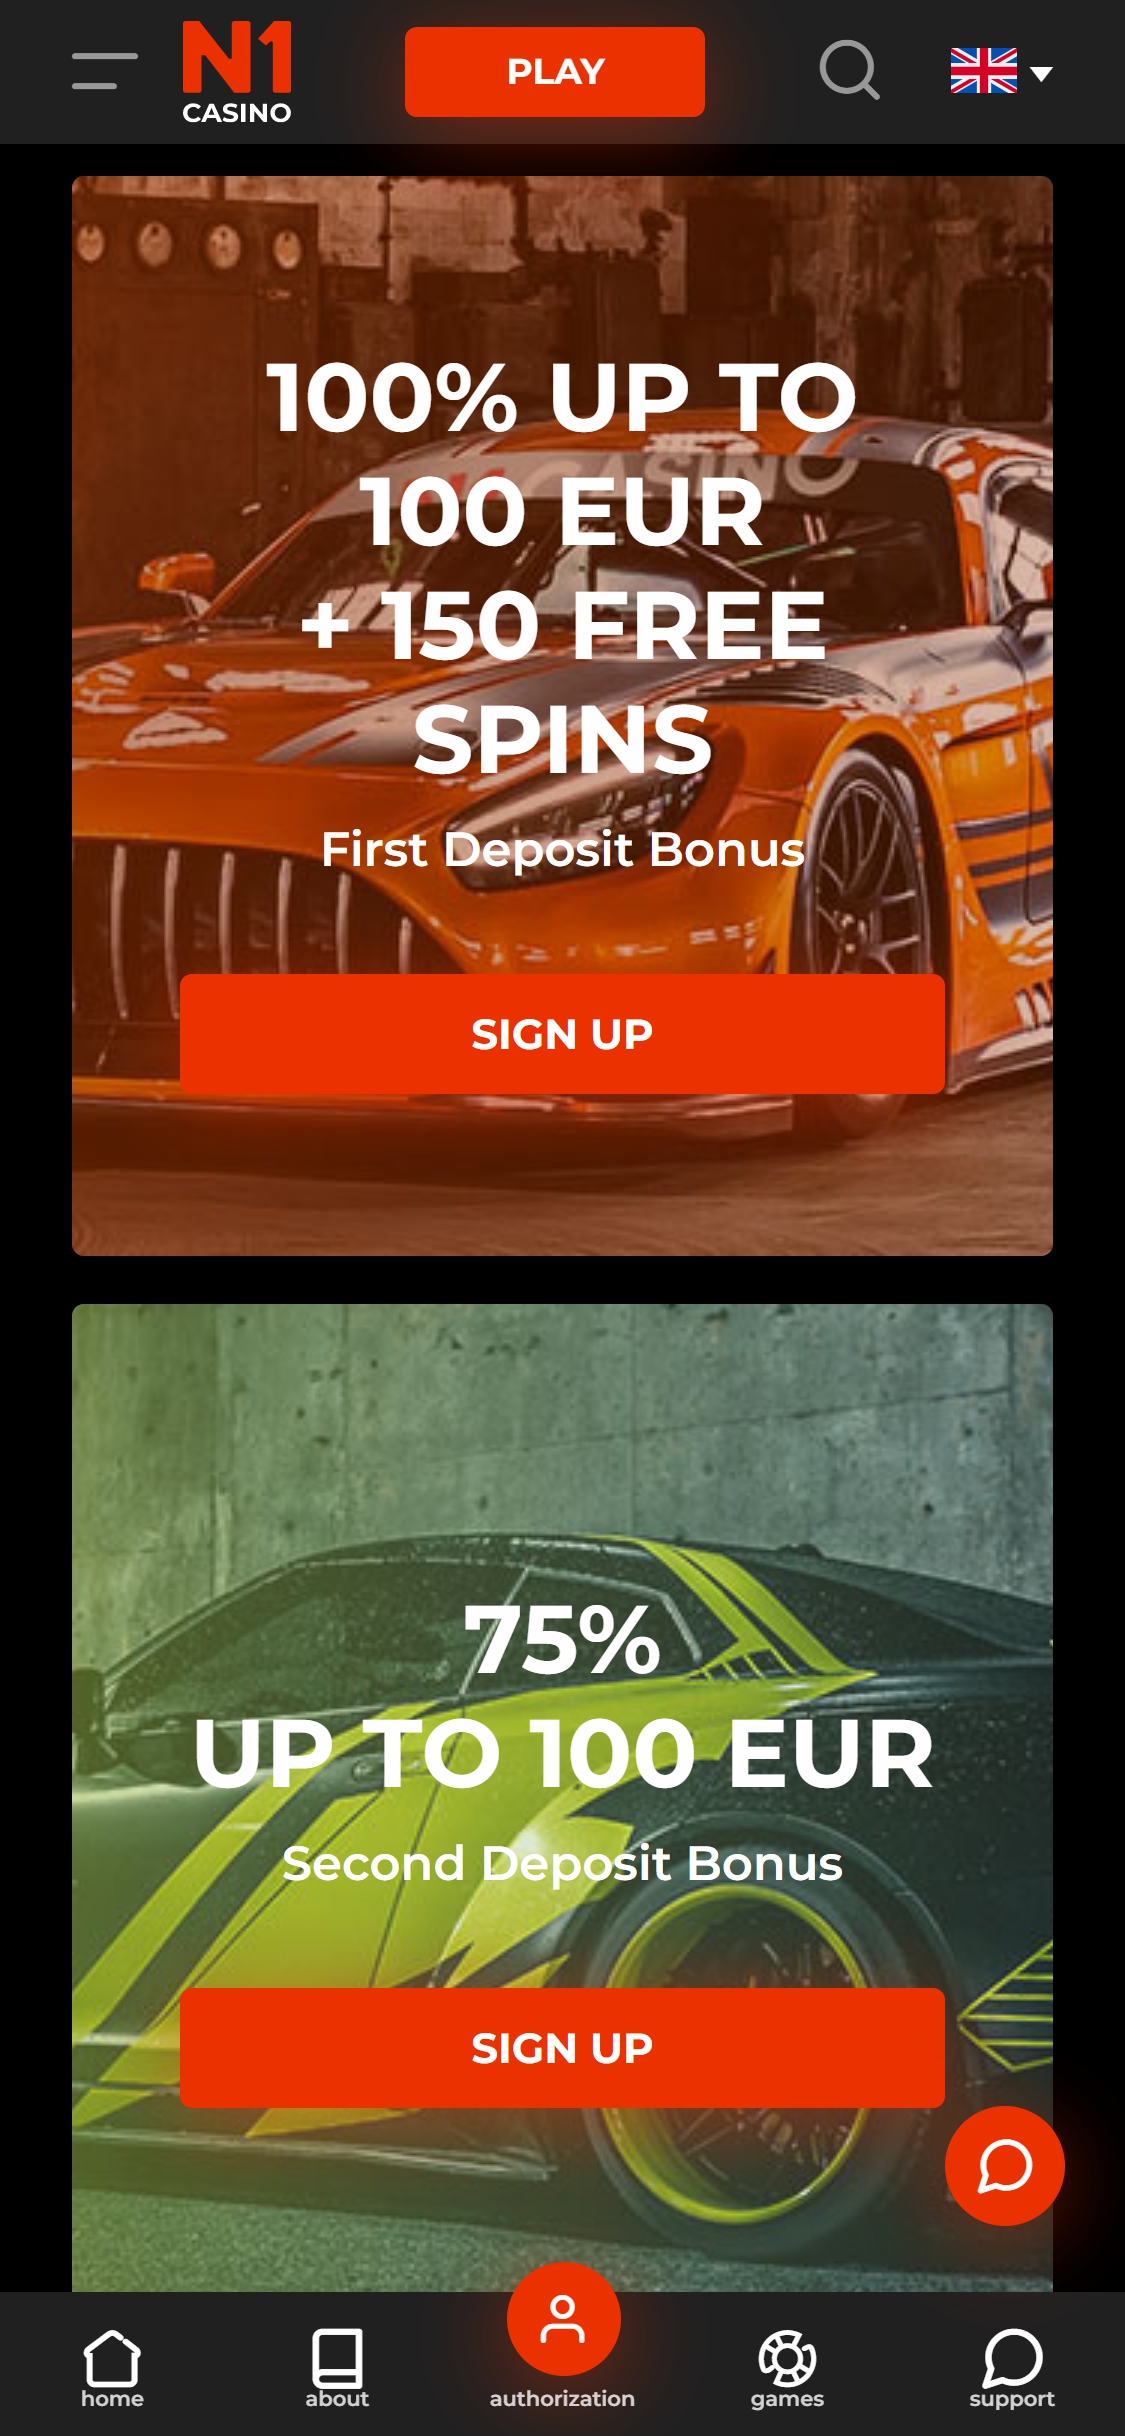 N1 Casino Mobile No Deposit Bonus Review